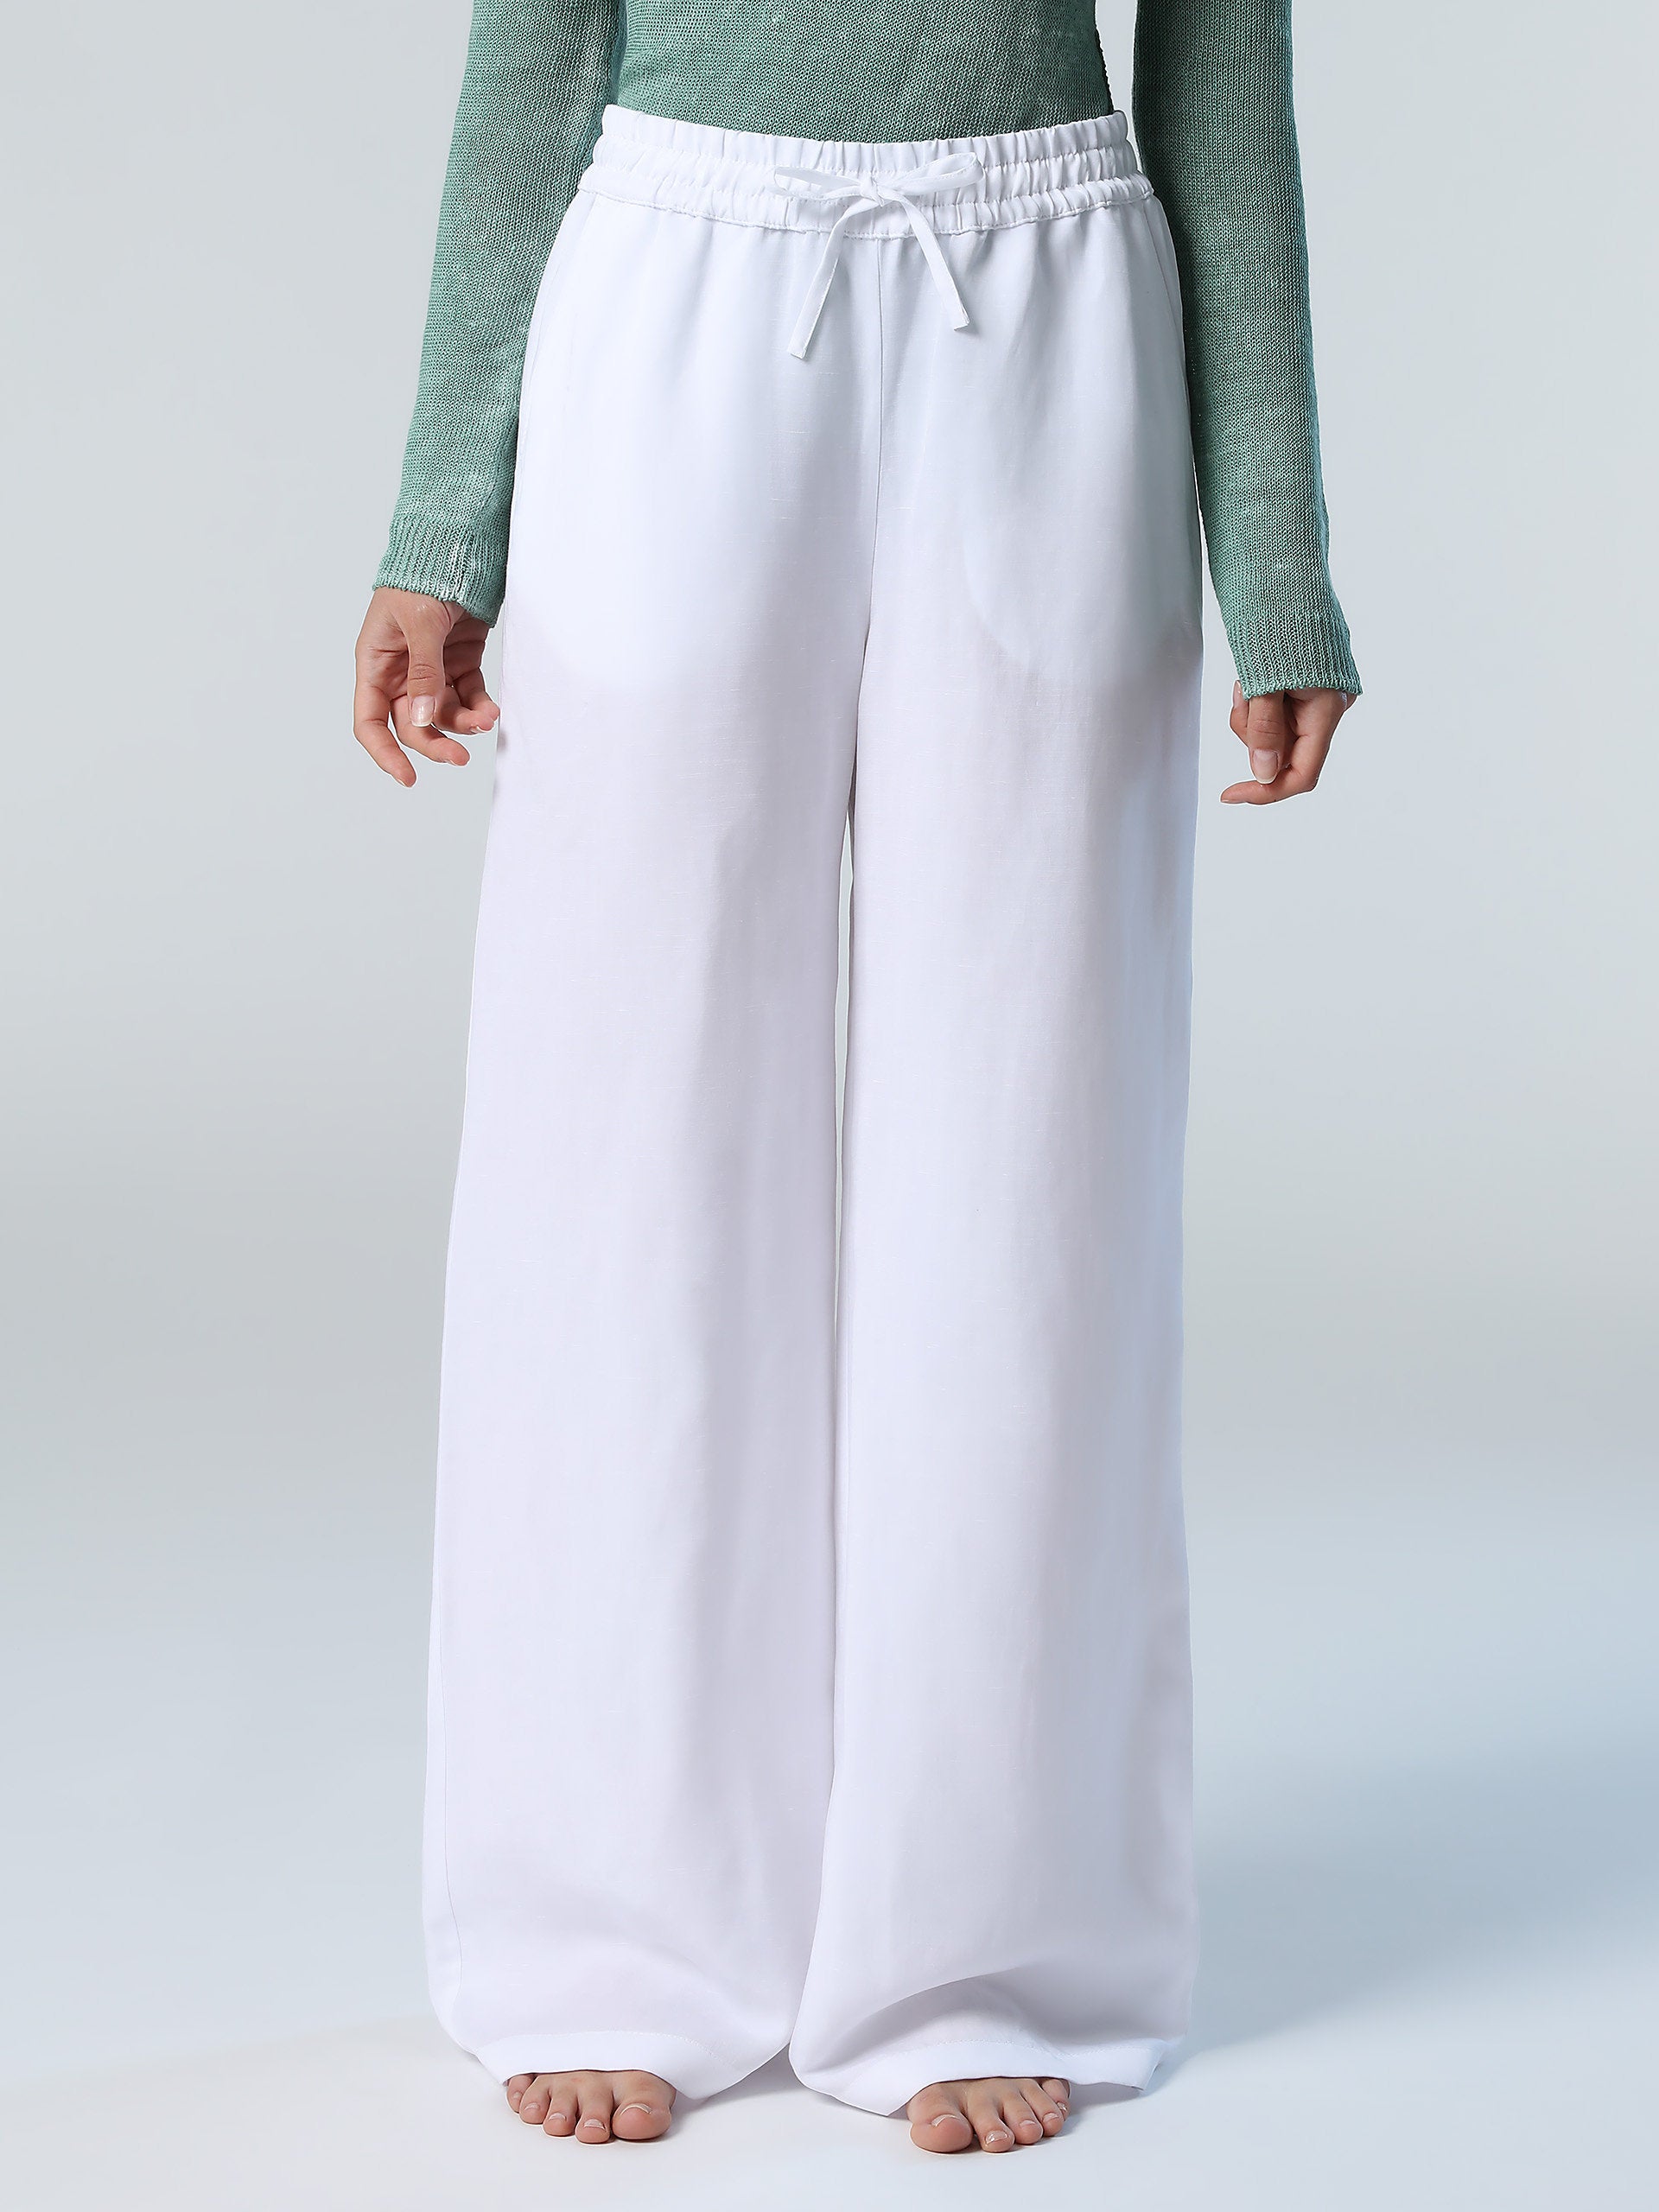 Jil Sander Off-White Cotton Drawstring Trousers Jil Sander